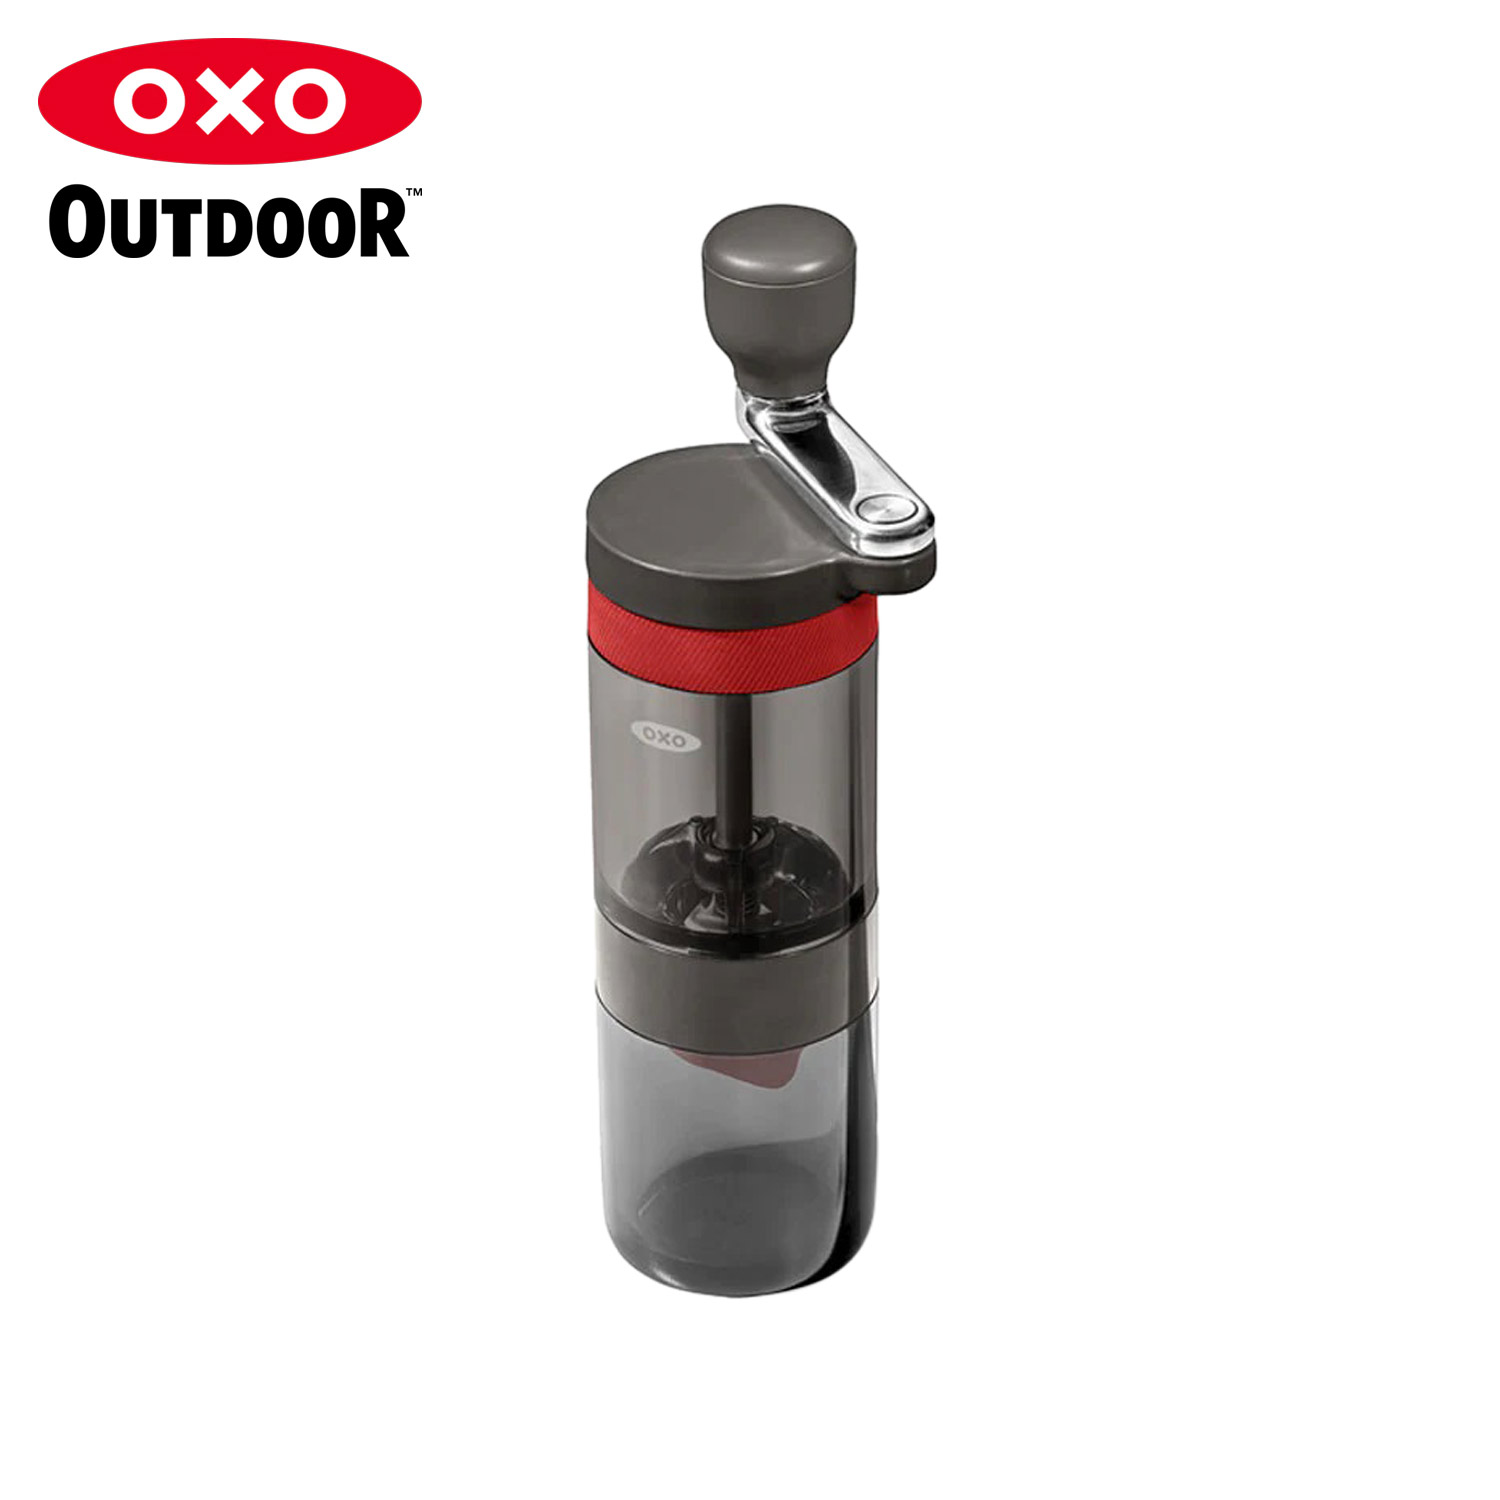 オクソー アウトドア OXO OUTDOOR コーヒーミル 手動 コーヒーグラインダー 手挽き 豆挽き コンパクト 小型 携帯 コンパクトコーヒーグラインダー 9109100